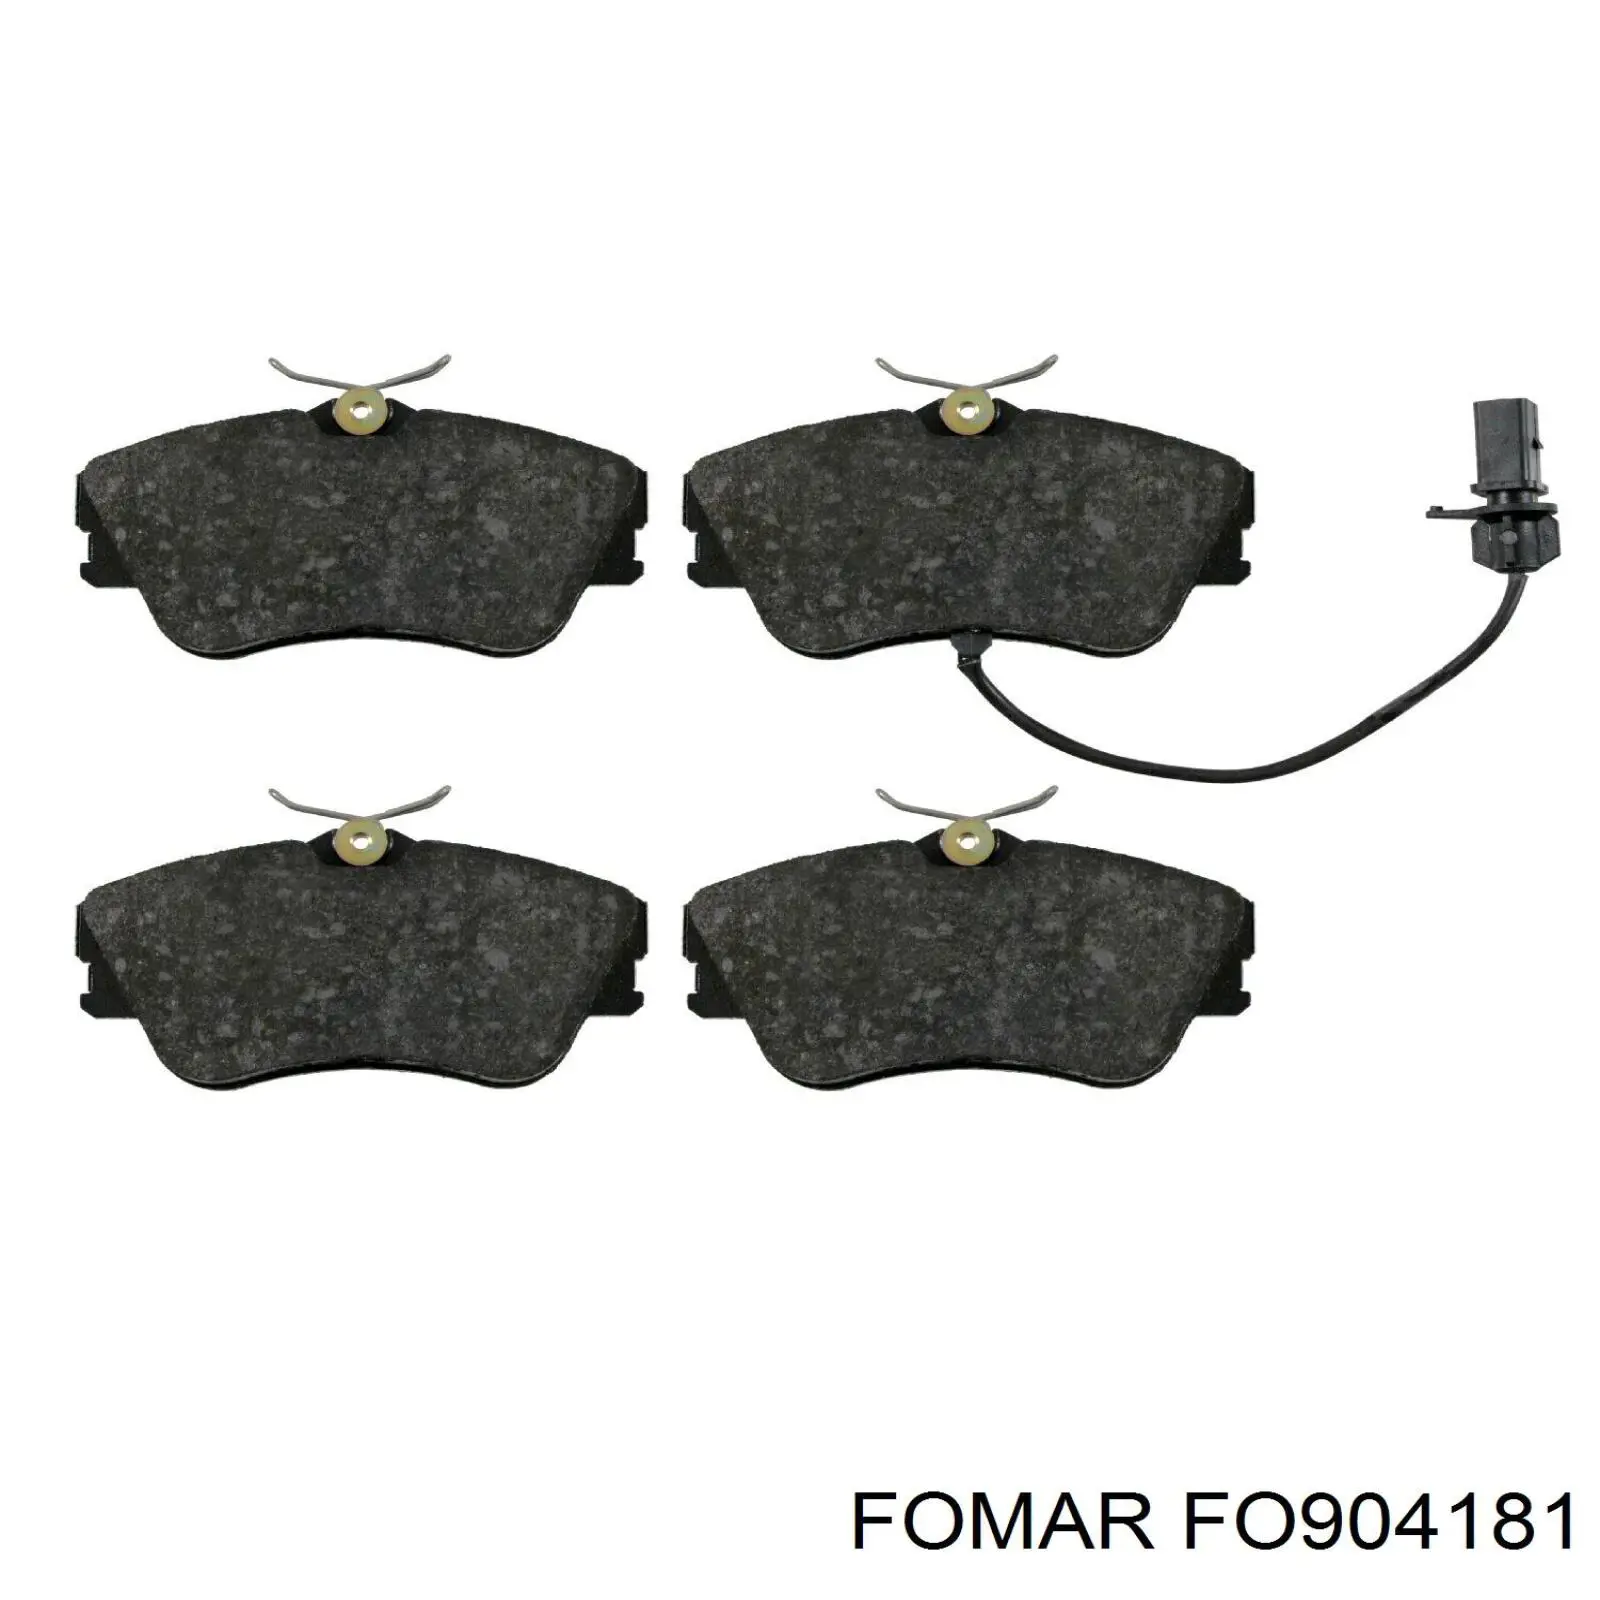 FO 904181 Fomar Roulunds передние тормозные колодки